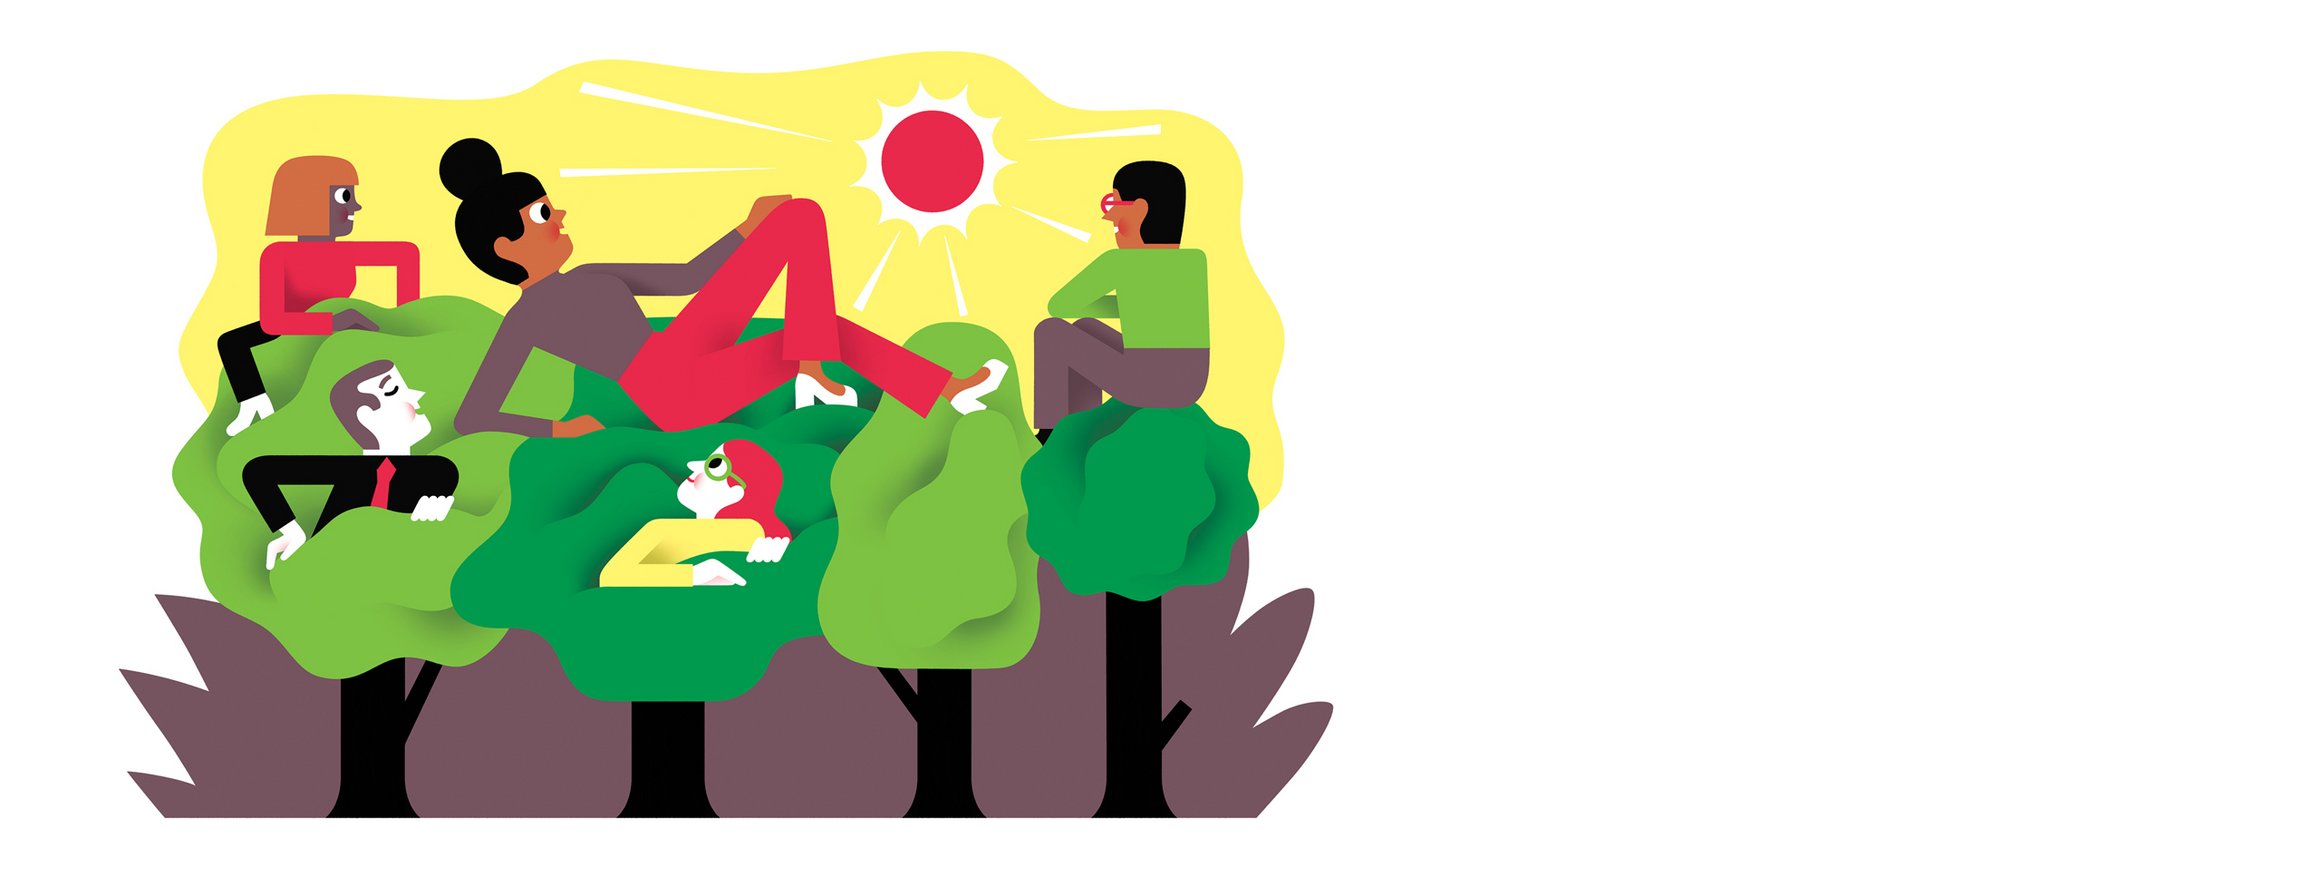 Die Illustration zeigt verschiedene Menschen, die auf Baumkronen sitzen und liegen und dabei entspannt den Sonnenuntergang genießen